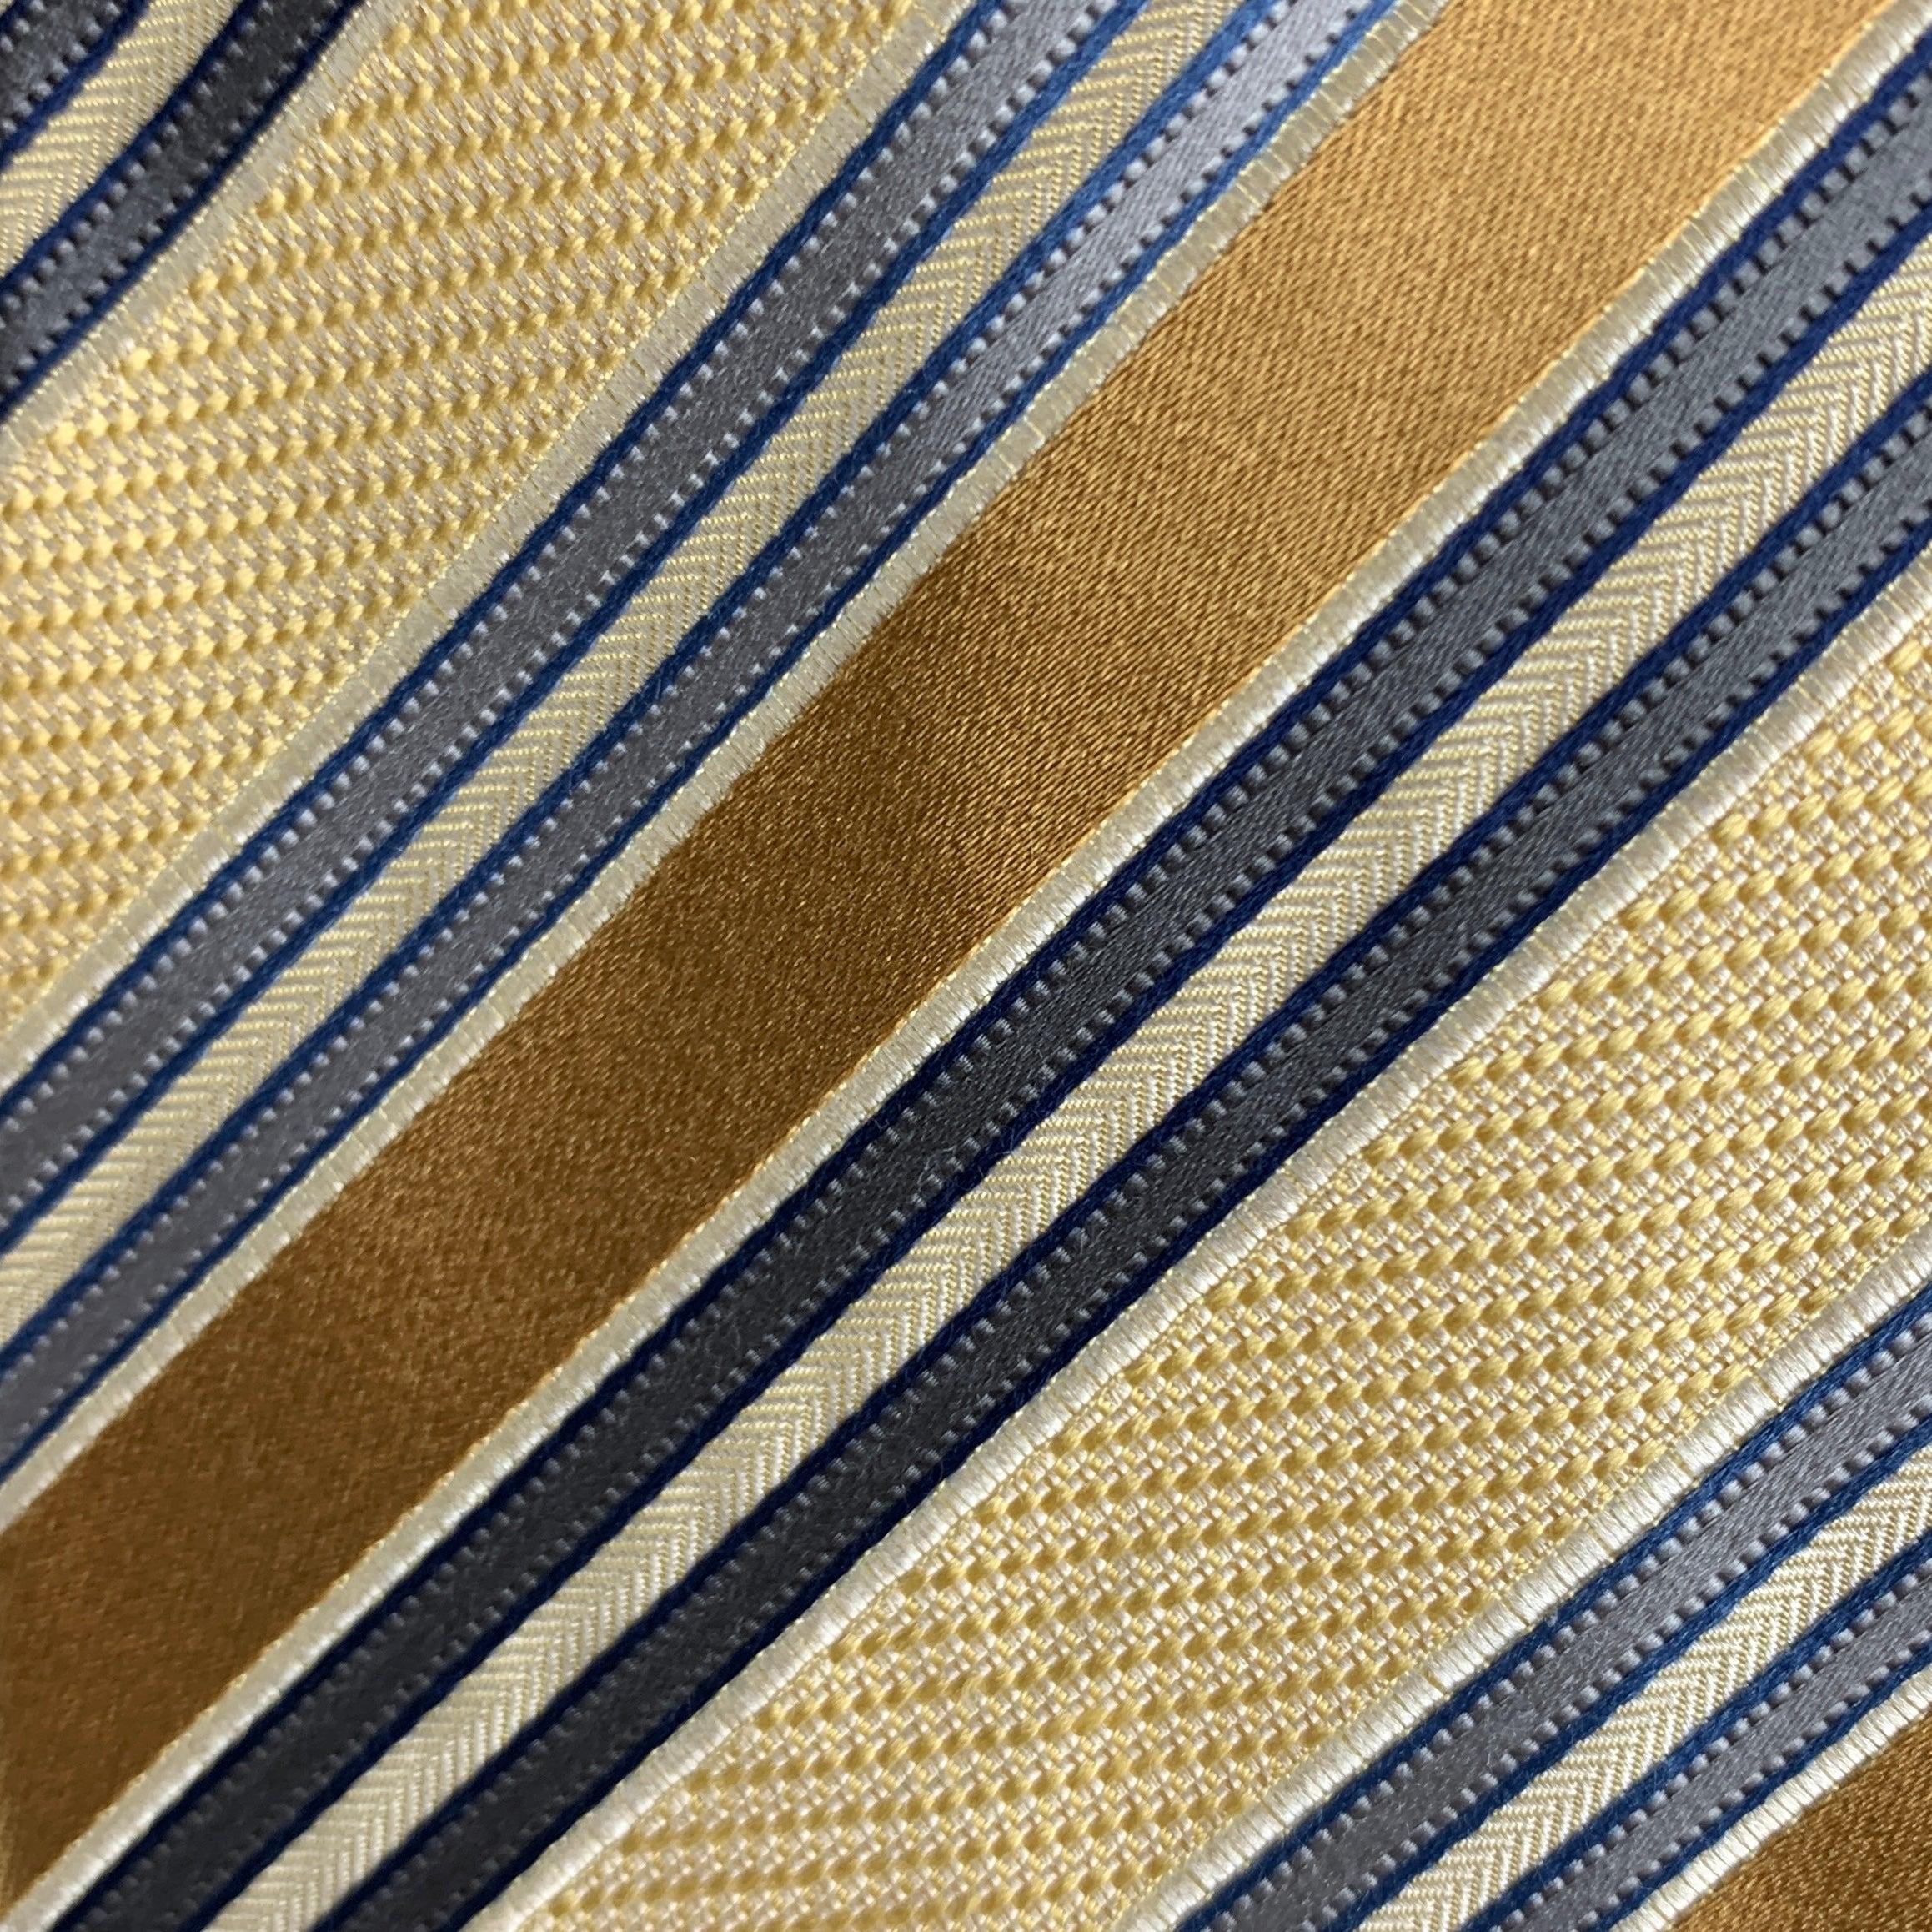 Cravate vintage ERMENEGILDO Zegna à rayures diagonales jaunes et grises. 100% soie. Fabriquées en Italie.
Très bon état d'origine.
 

Mesures : 
  Largeur : 3 pouces Longueur : 58 pouces 




  
  
 
Référence Sui Generis : 124760
Catégorie :